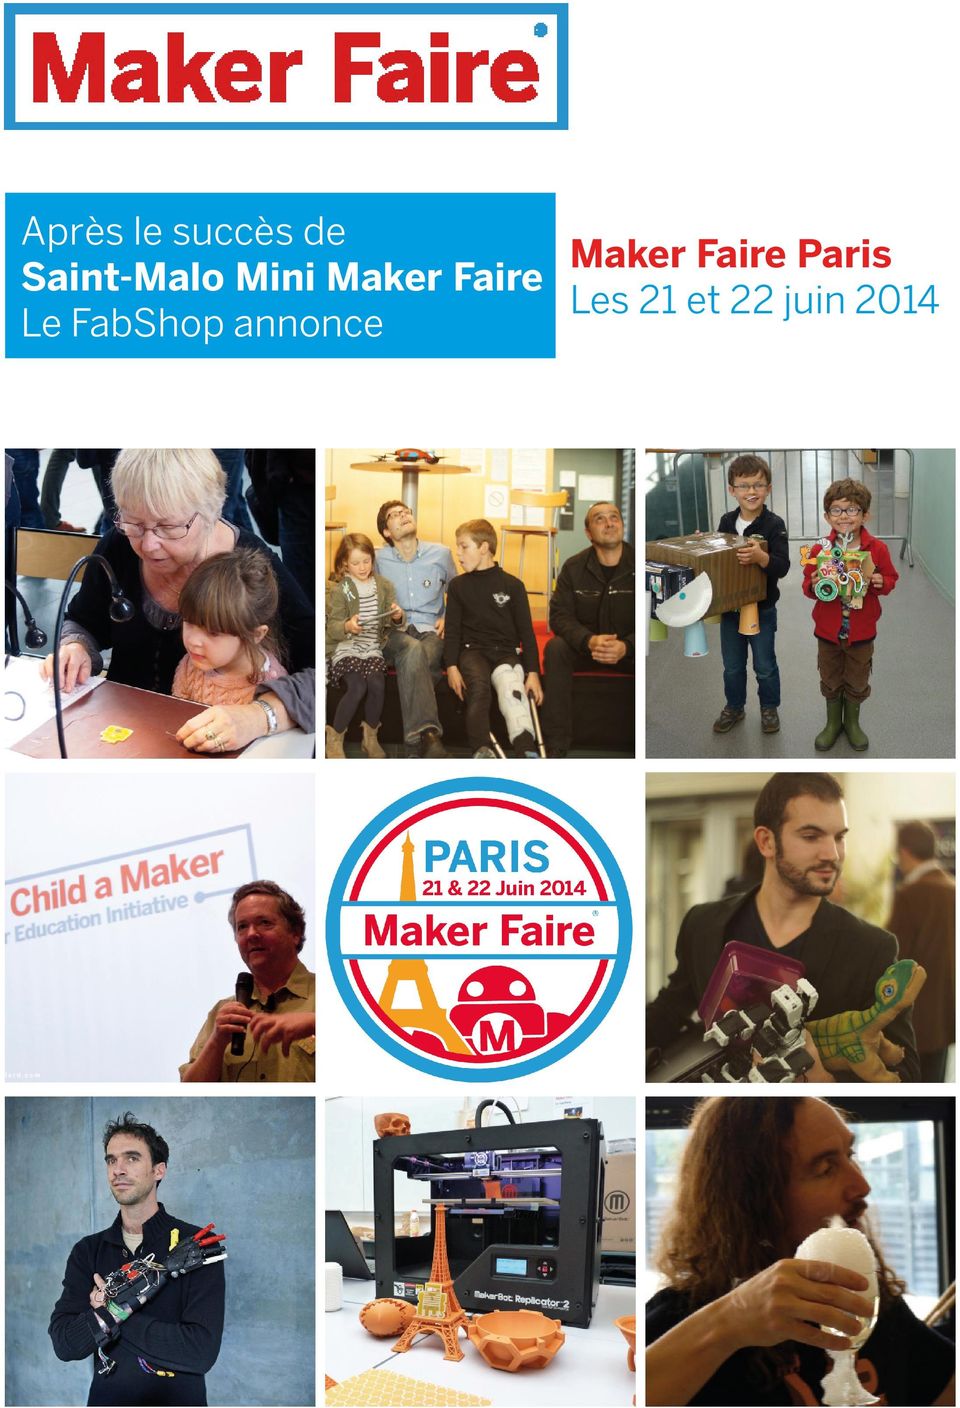 Mini Maker Faire Les 21 et